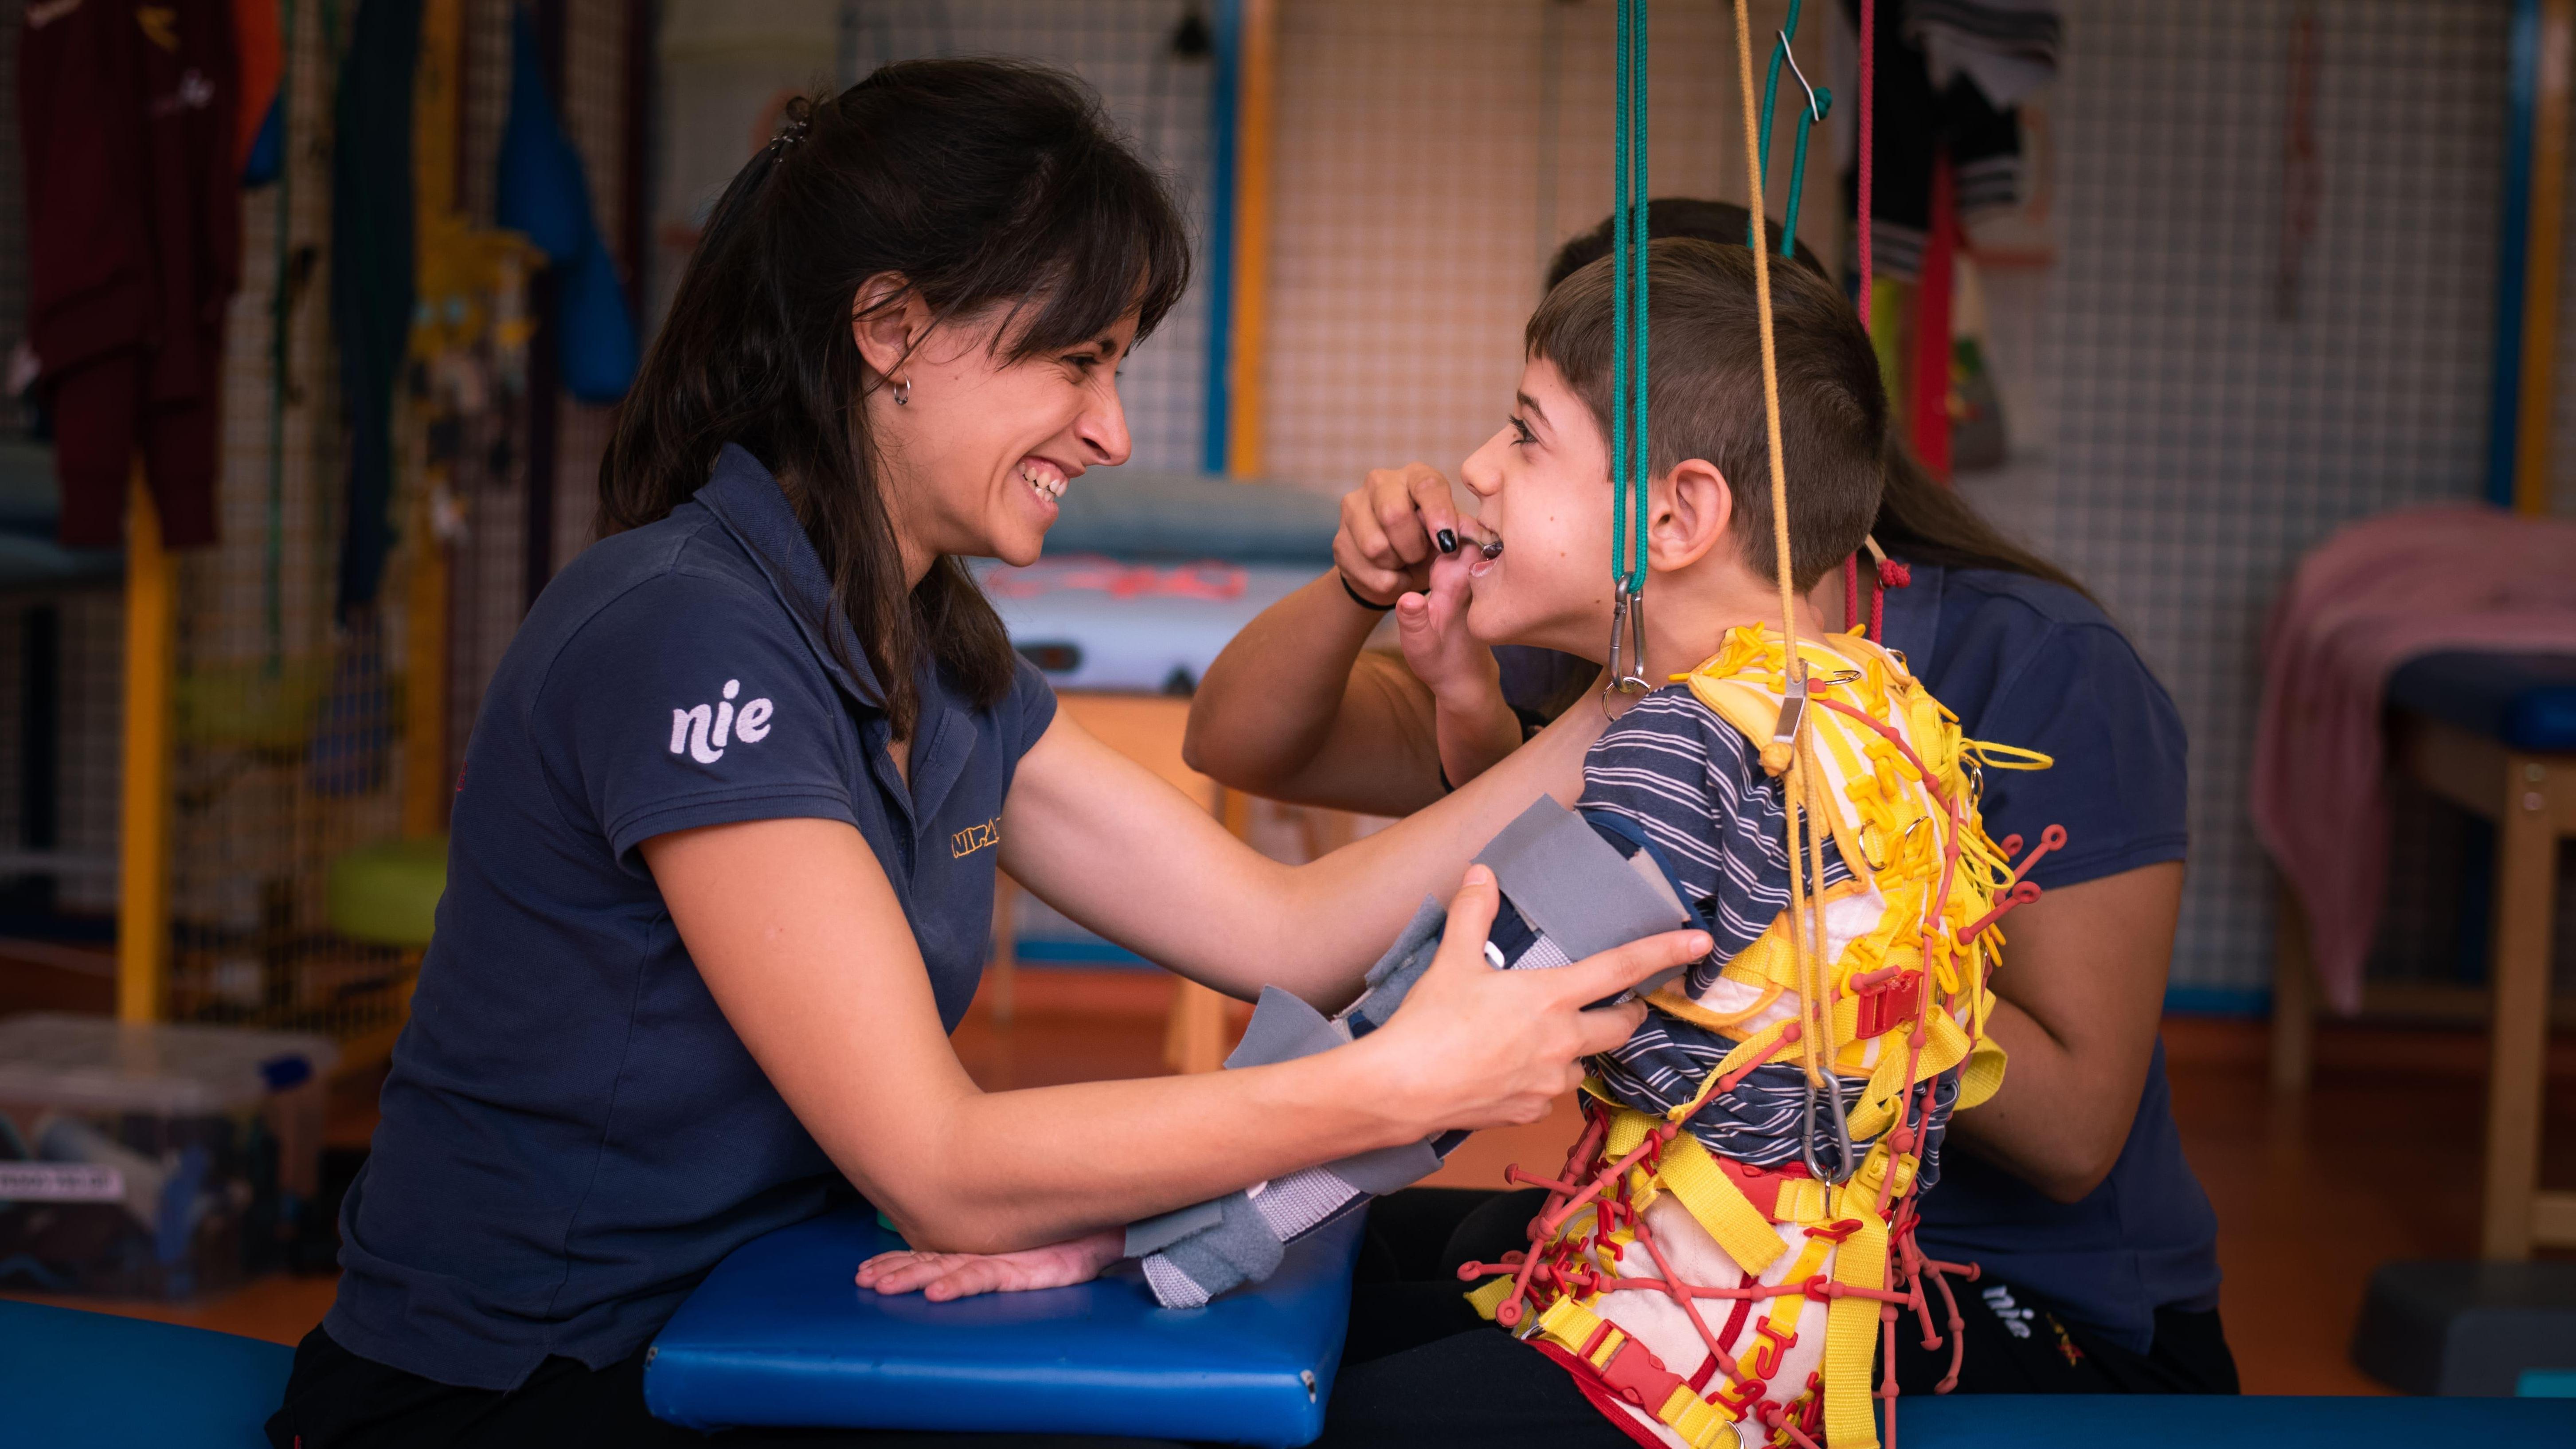 Programa de rehabilitación intensiva con órtesis Spidersuit para niños con parálisis cerebral